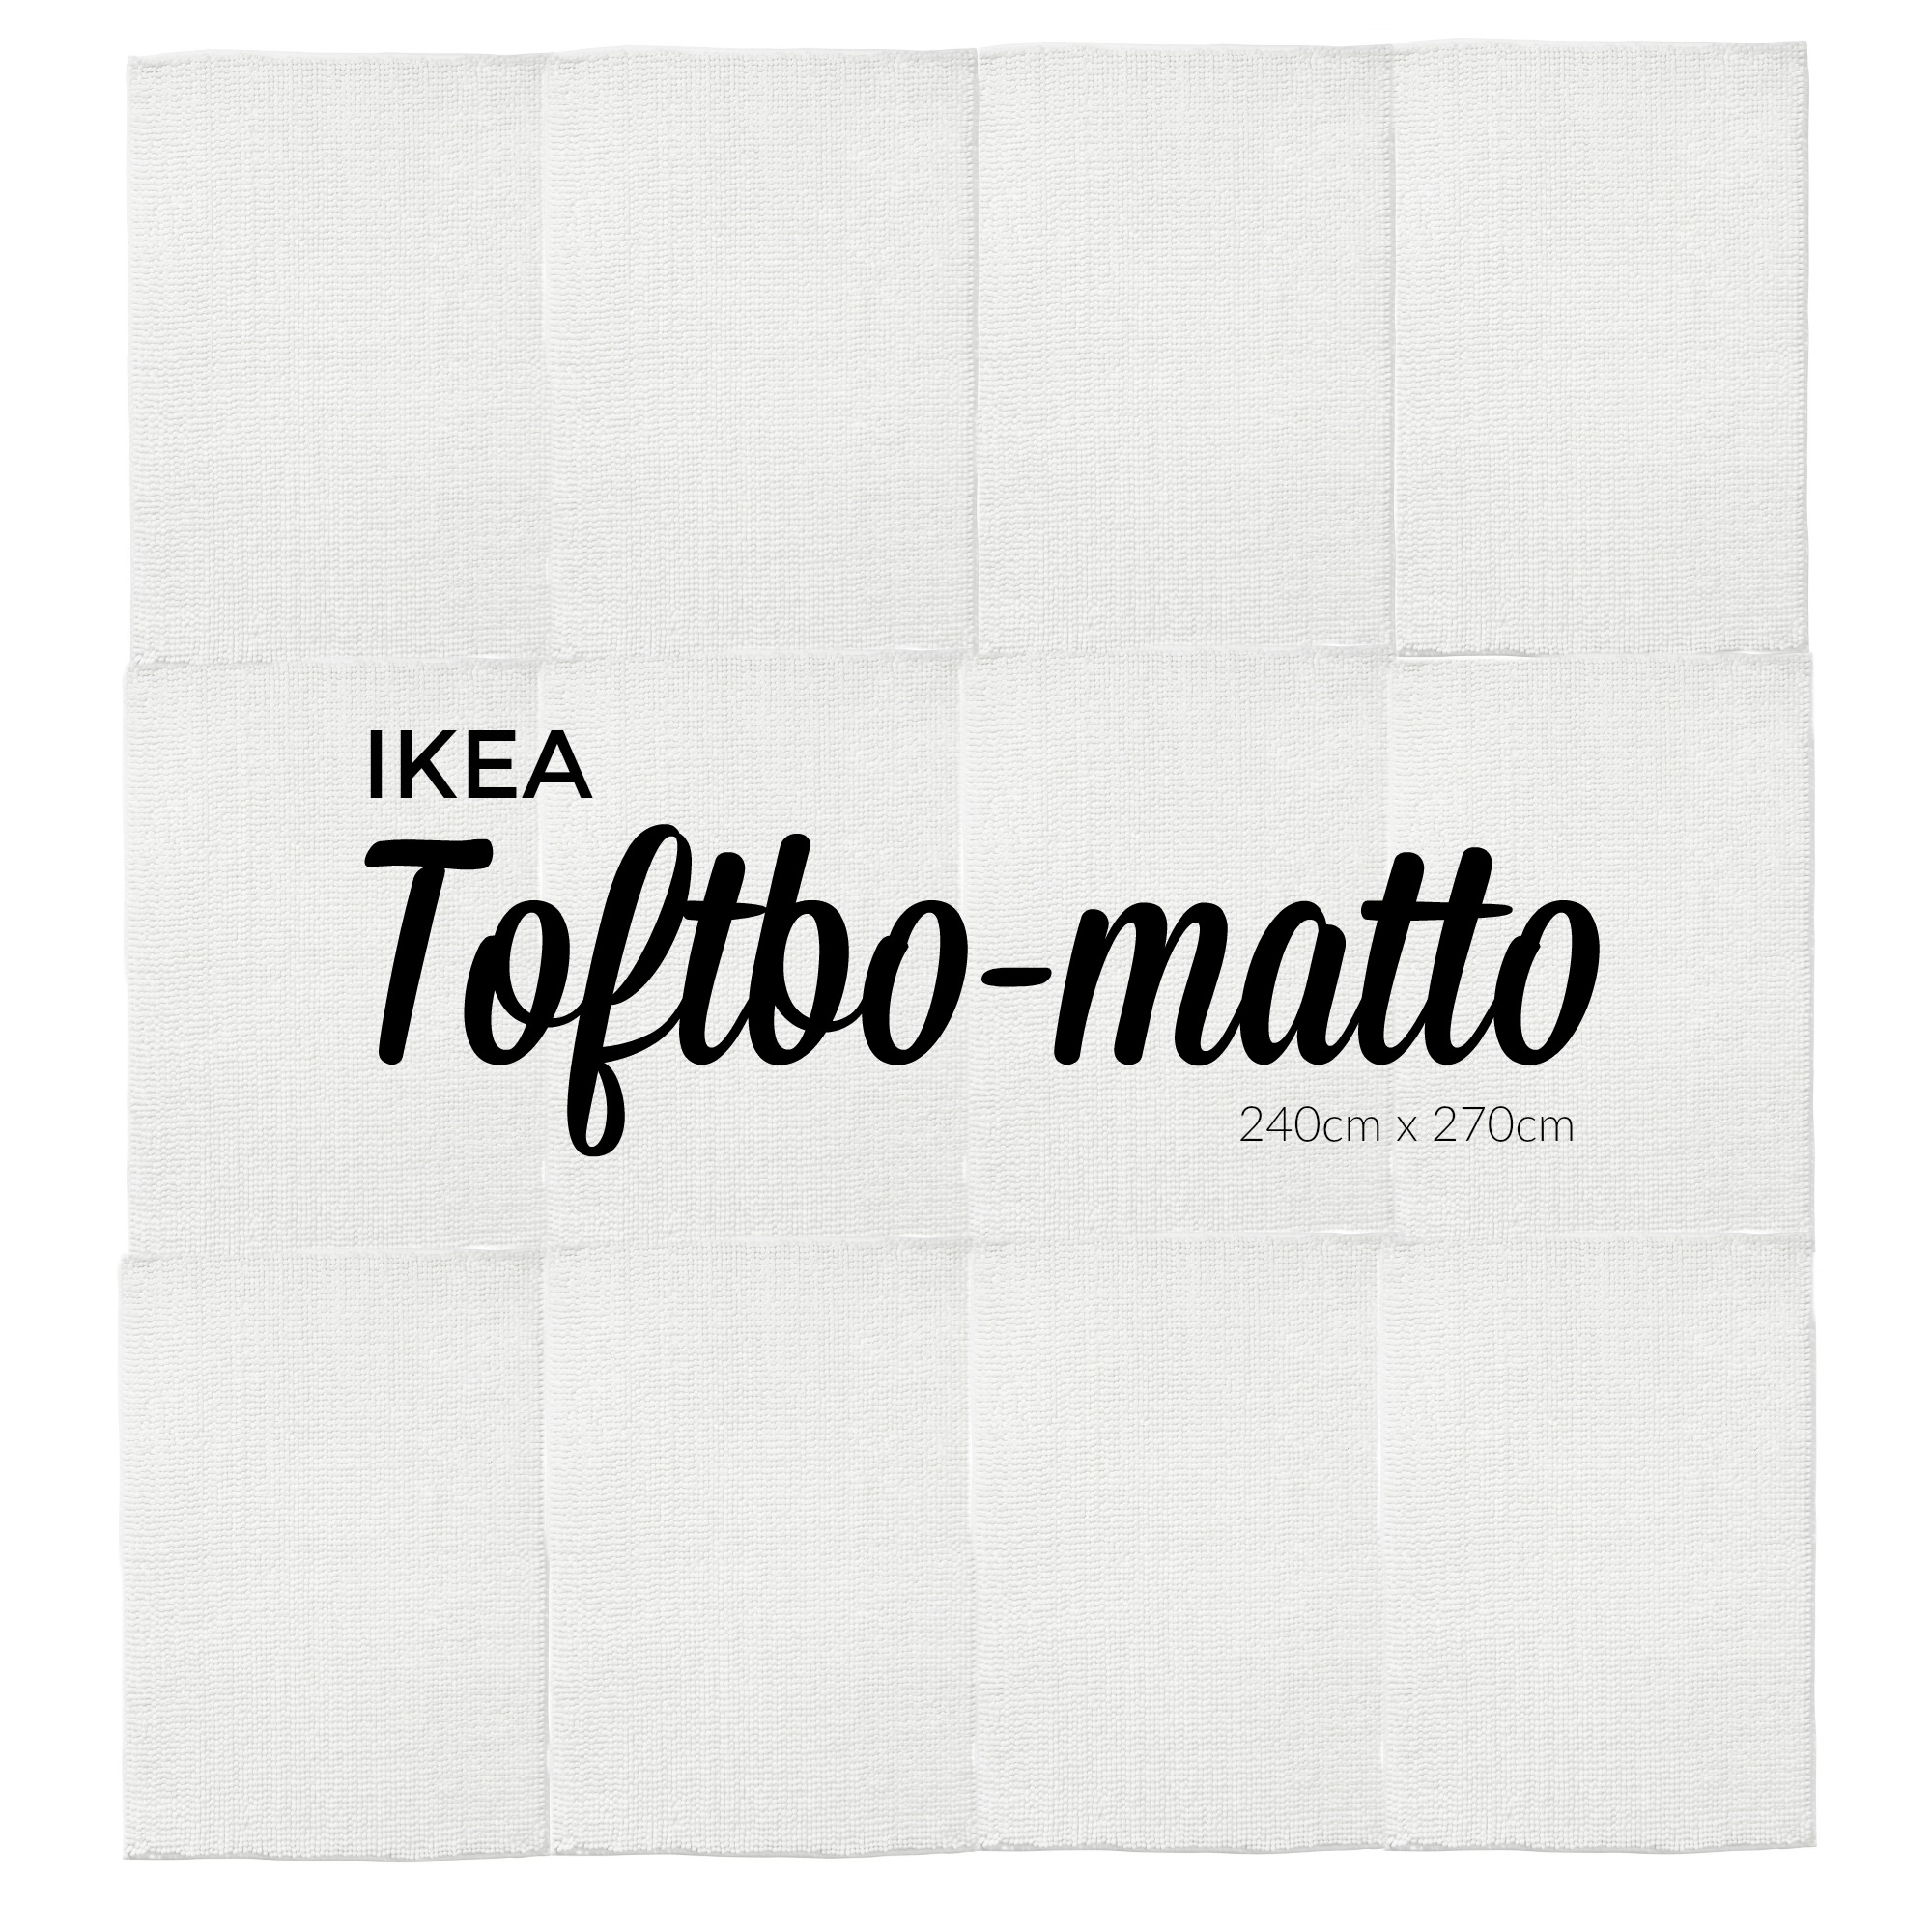 Ikea Toftbo matto valkoinen